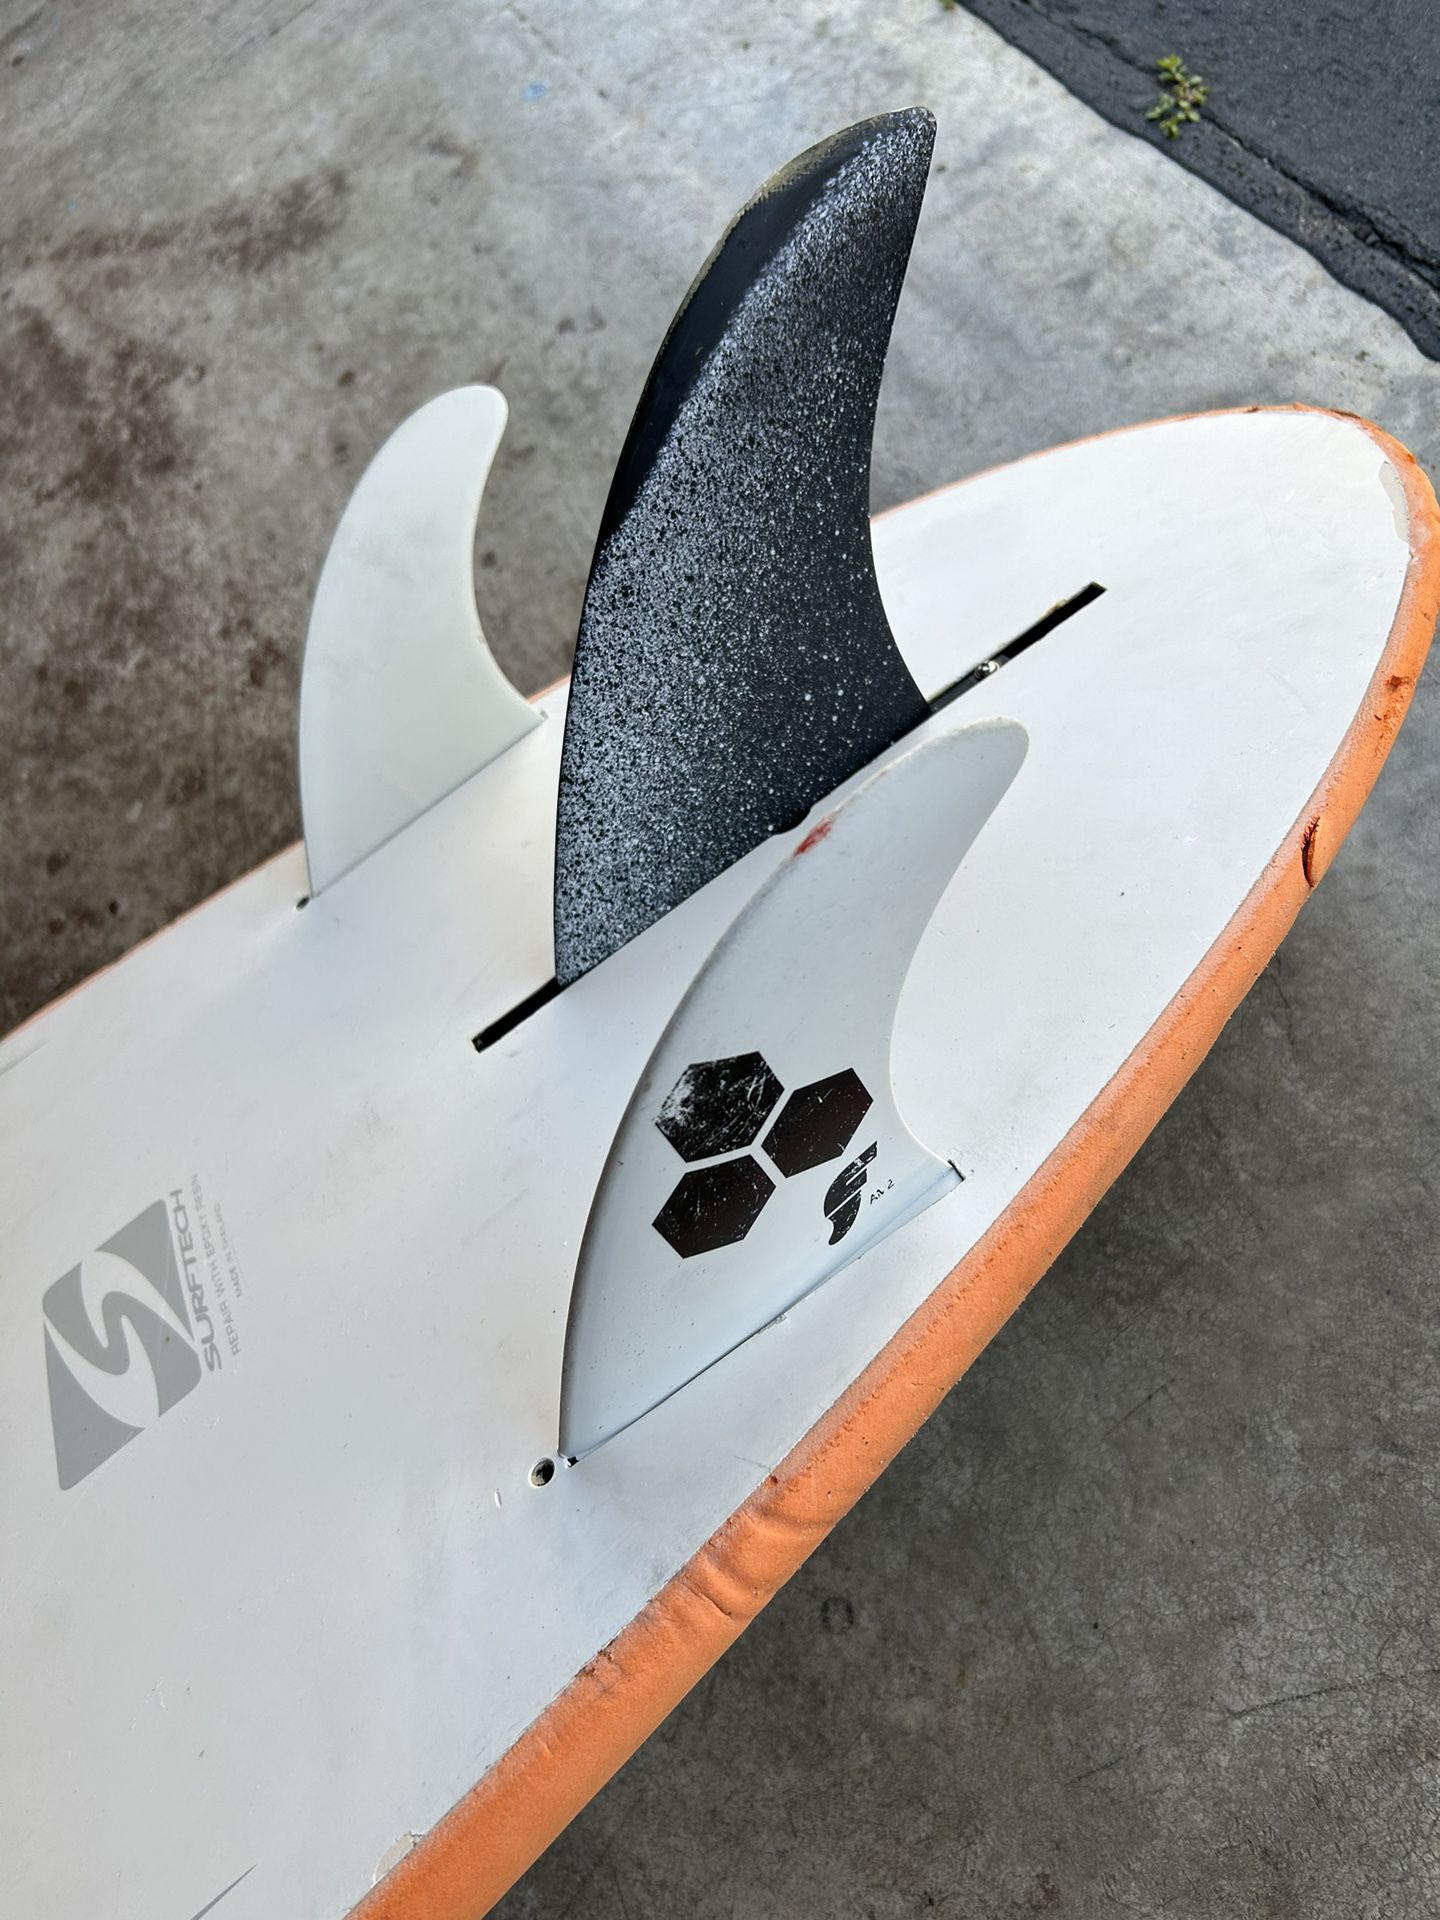 Surf tech Softop Surfboard 7.4’ $100